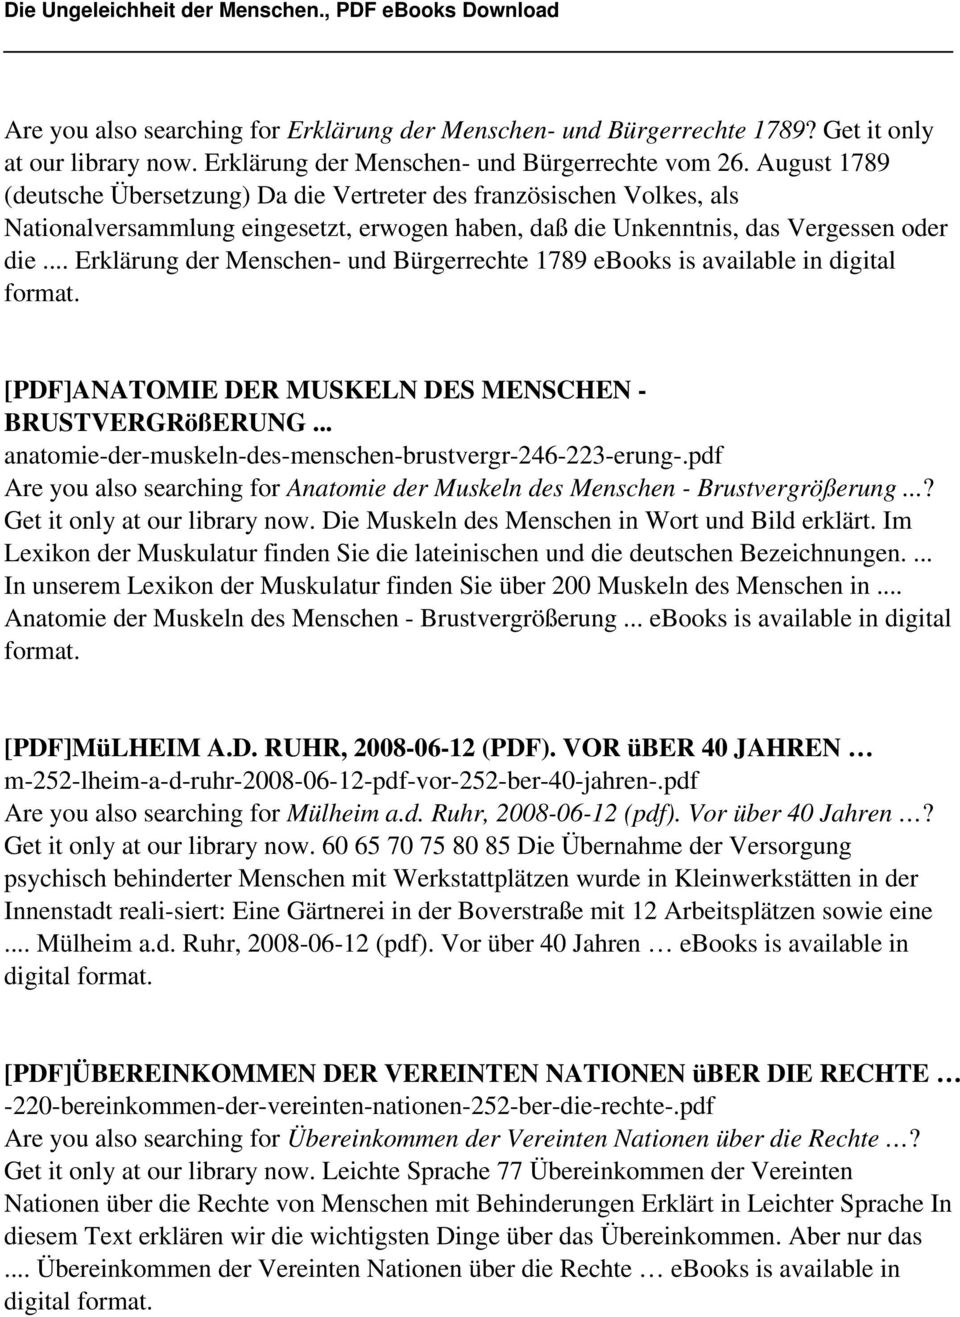 .. Erklärung der Menschen- und Bürgerrechte 1789 ebooks is available in digital [PDF]ANATOMIE DER MUSKELN DES MENSCHEN - BRUSTVERGRößERUNG... anatomie-der-muskeln-des-menschen-brustvergr-246-223-erung-.